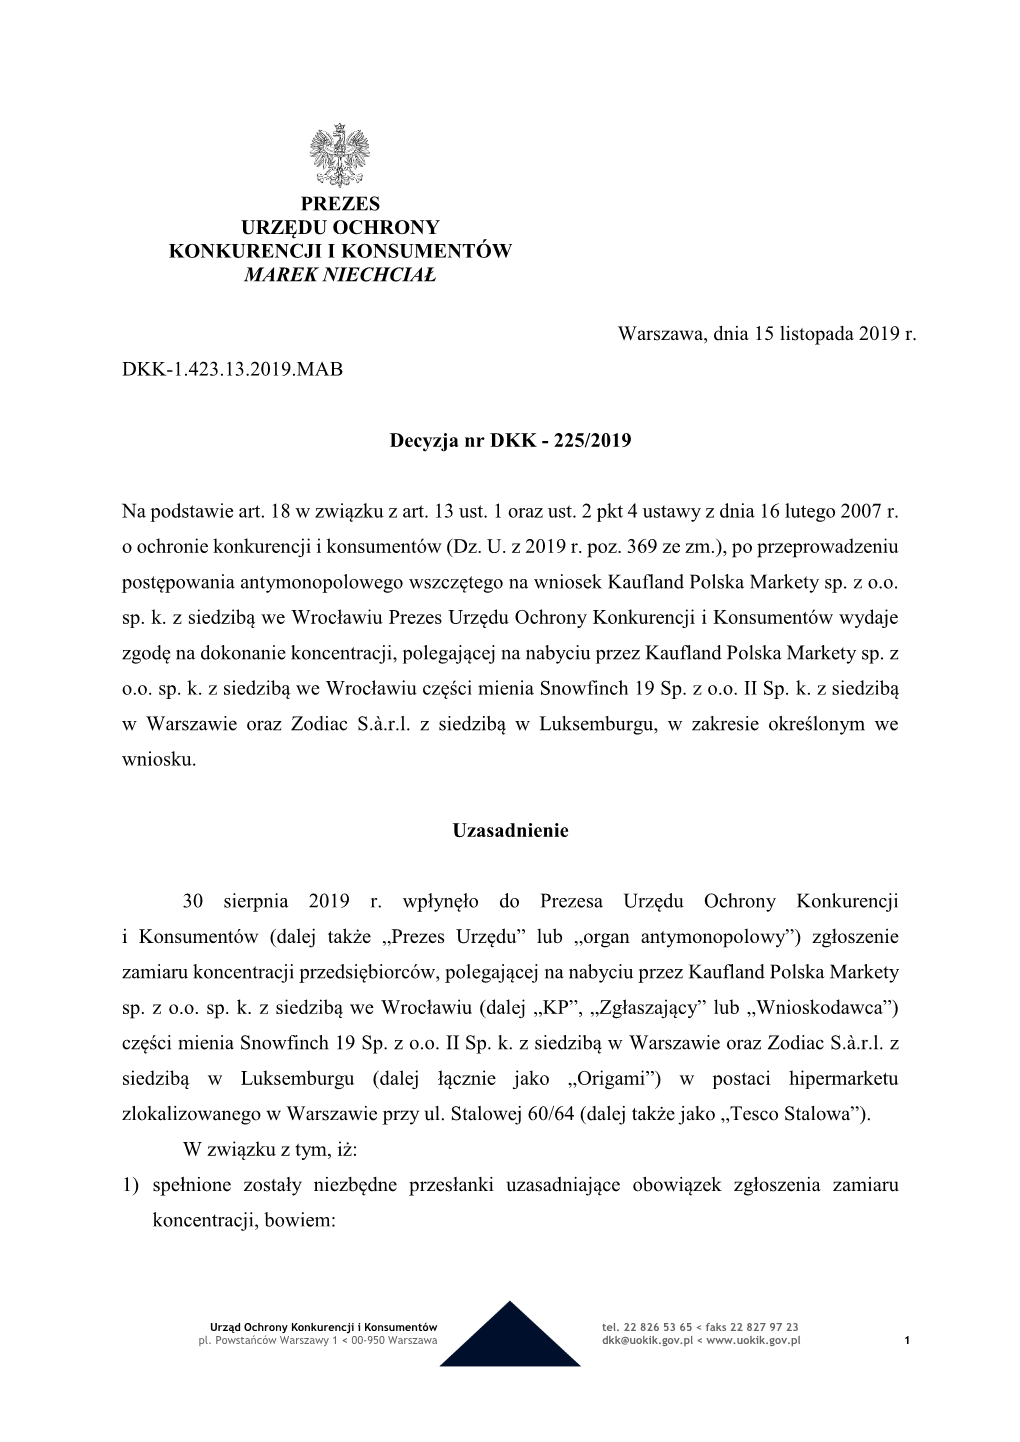 Decyzja Tesco Stalowa BIP.PDF